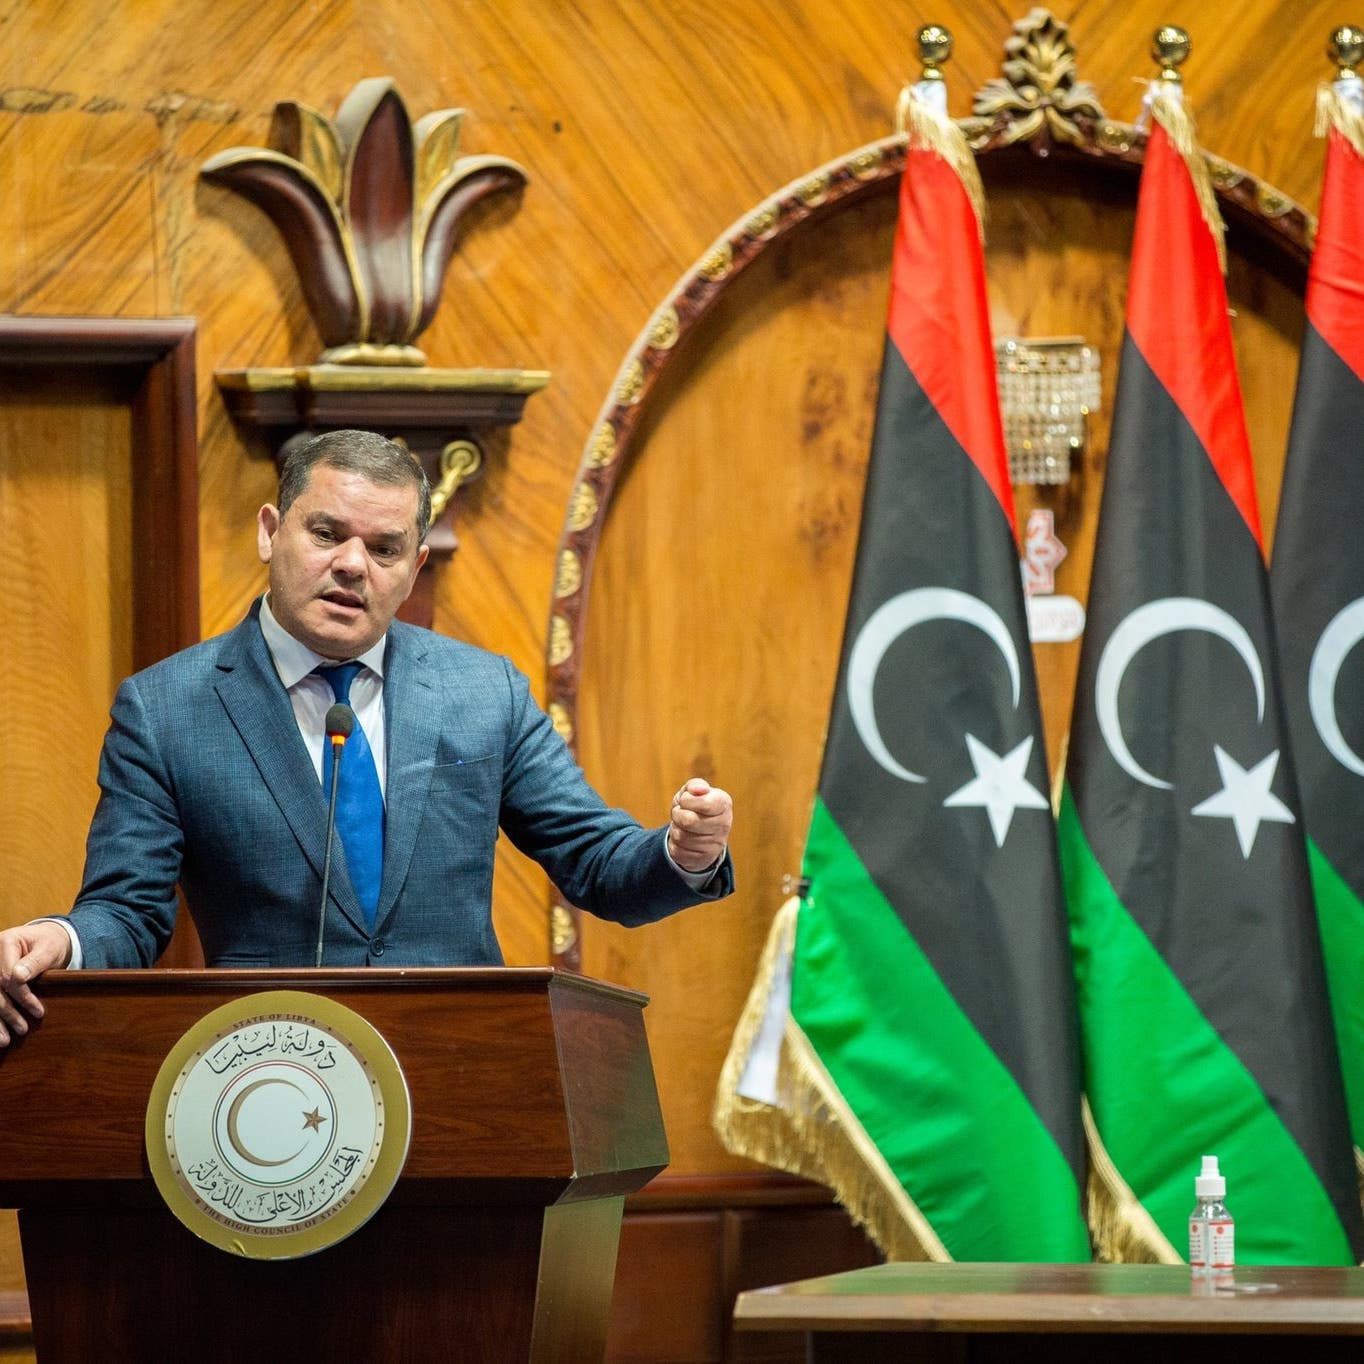 وزراء بشهادات مزورة.. اتهامات تلاحق حكومة ليبيا